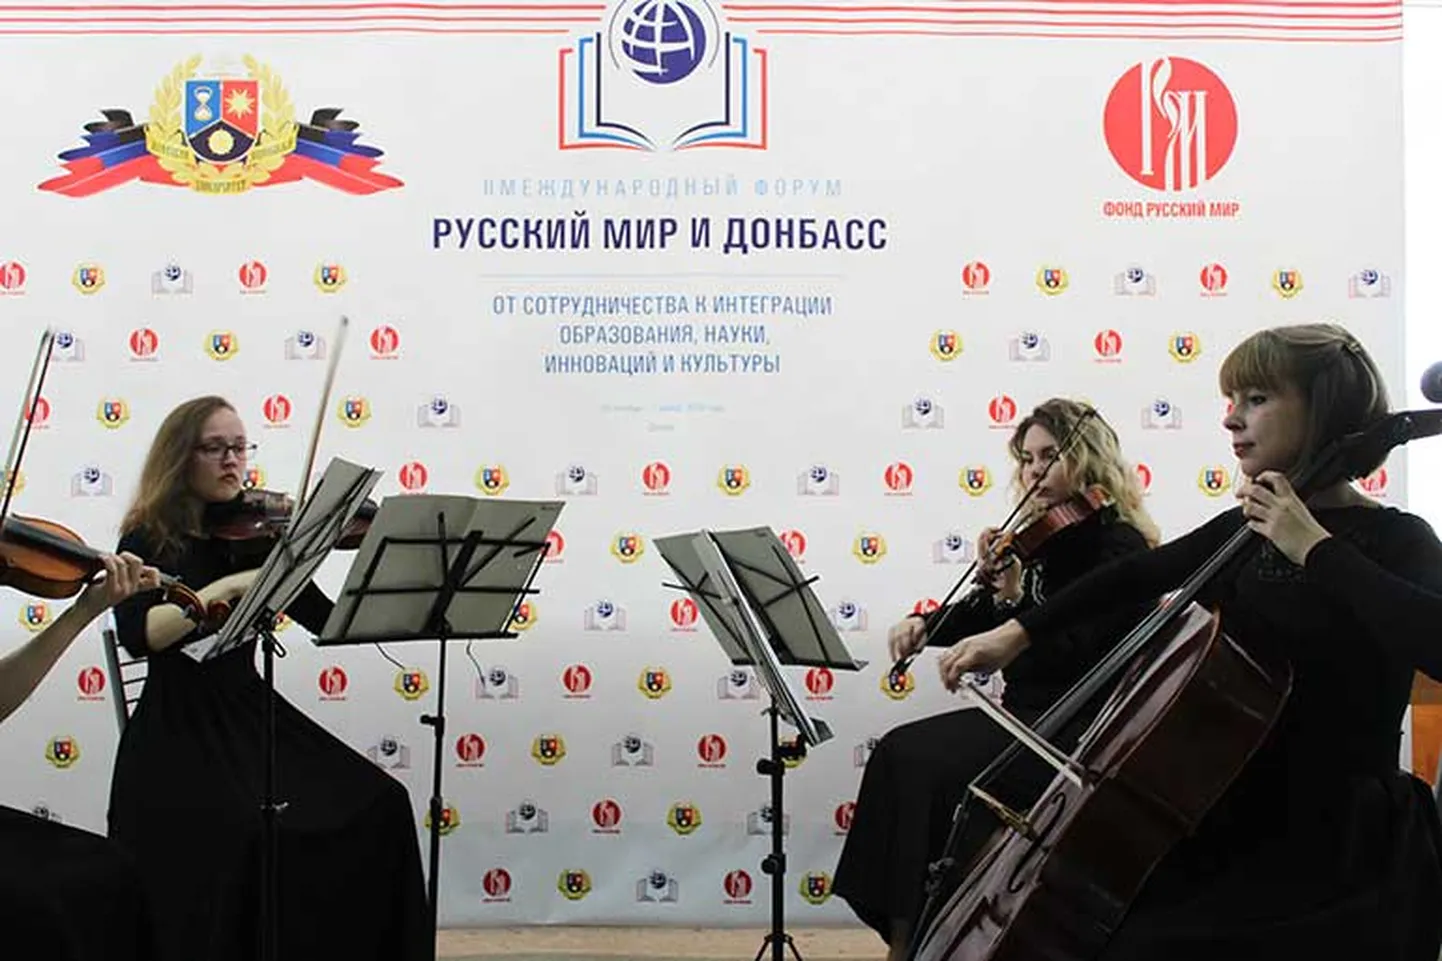 Kontsert fondi Russki Mir egiidi all Ukraina Donetski oblasti okupeerimise toetuseks